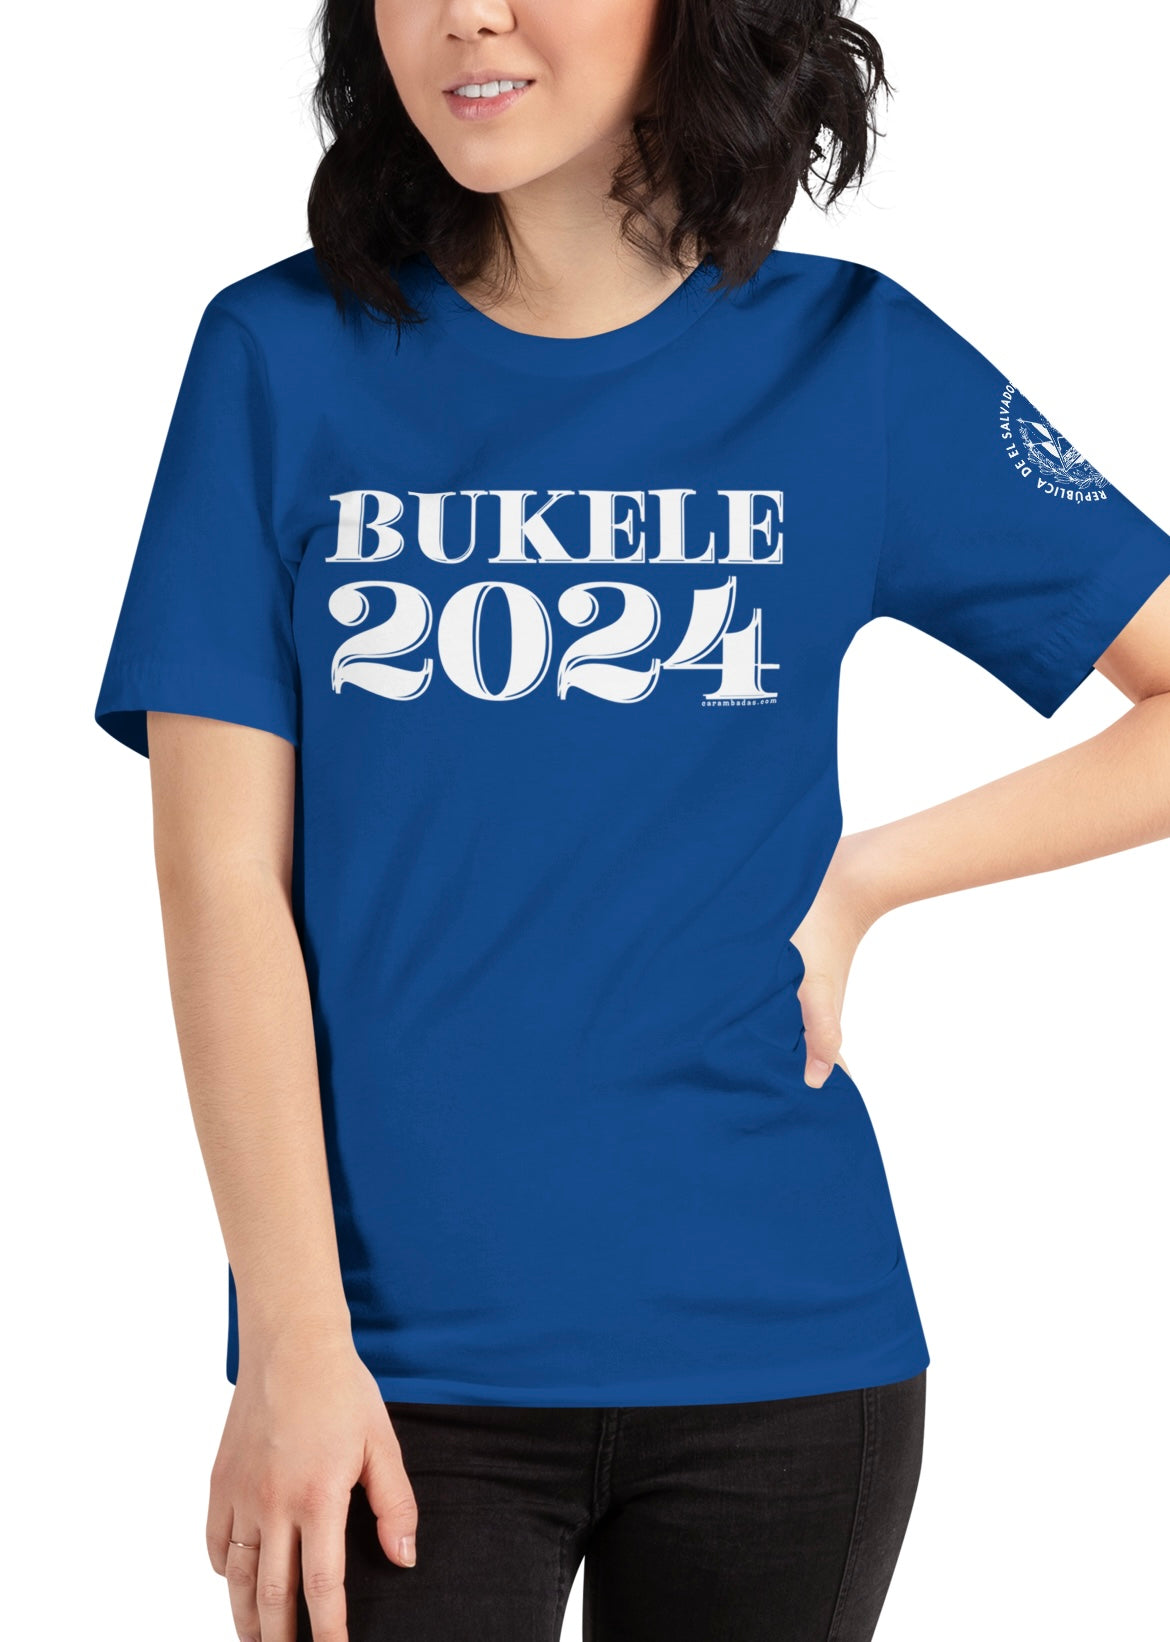 Bukele 2024 Unisex T-Shirt